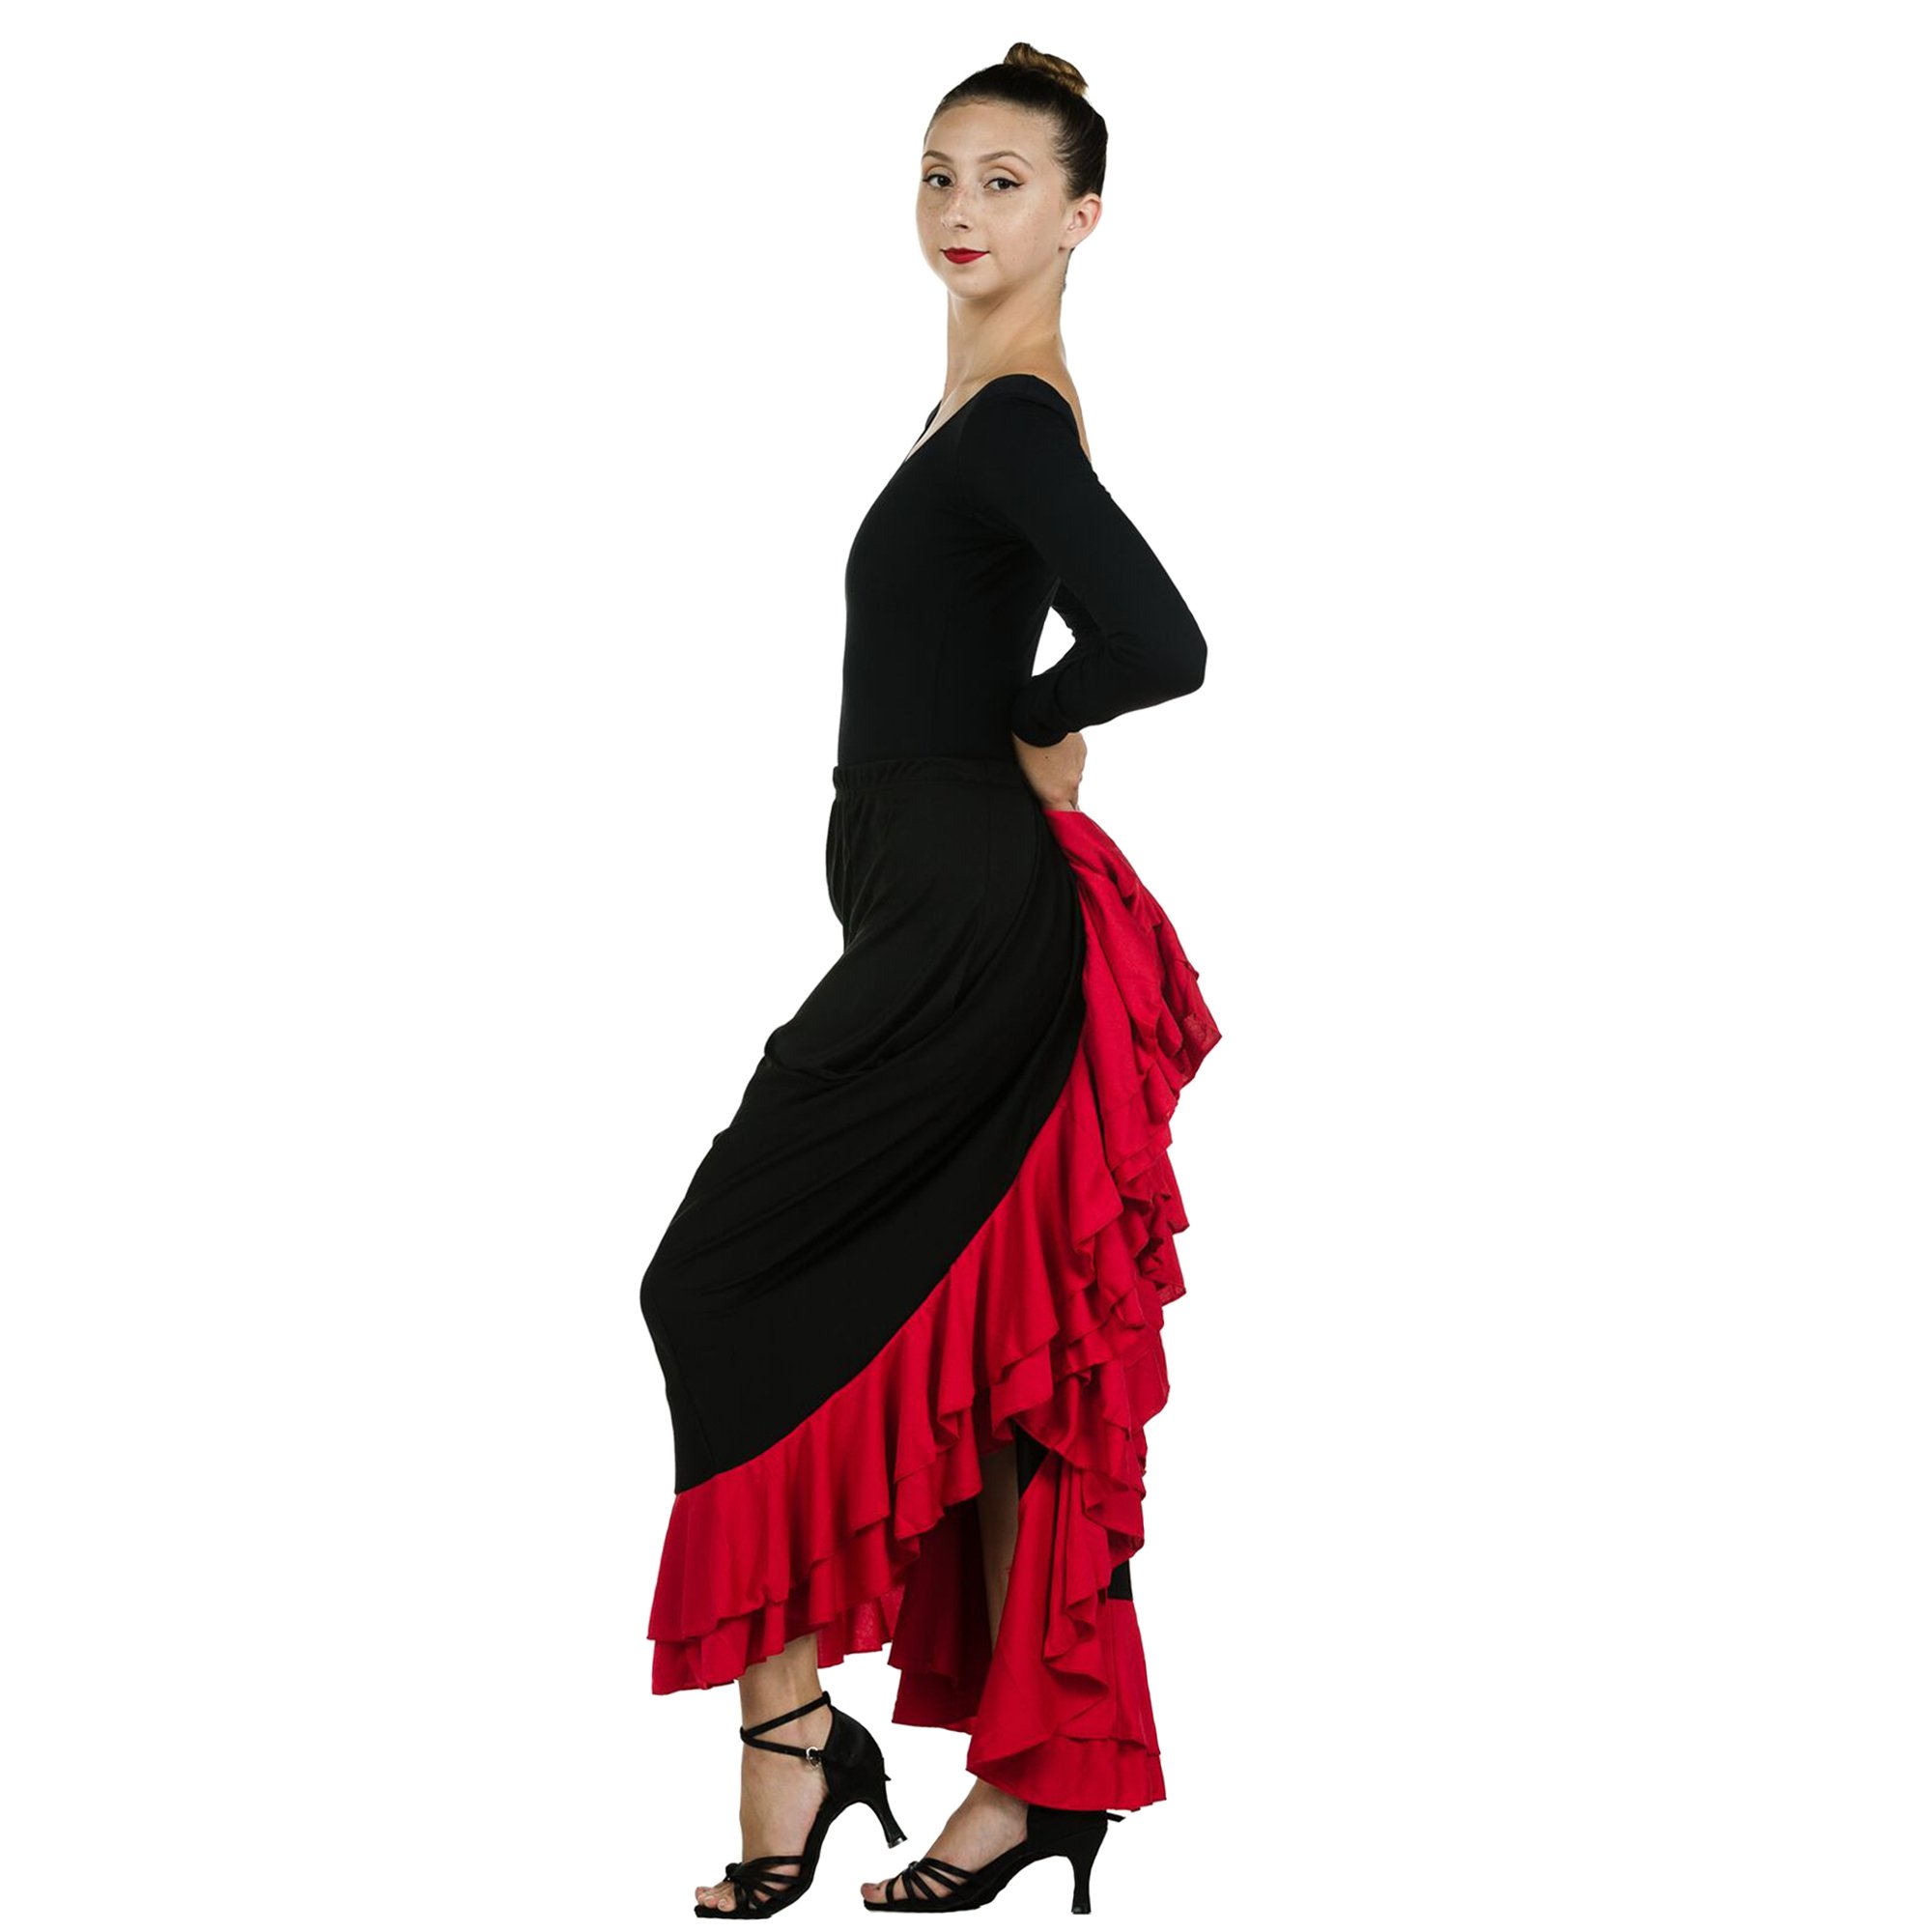 Danzcue Flamenco Full Circle Ruffles Skirt [DQFS003A] - $40.99